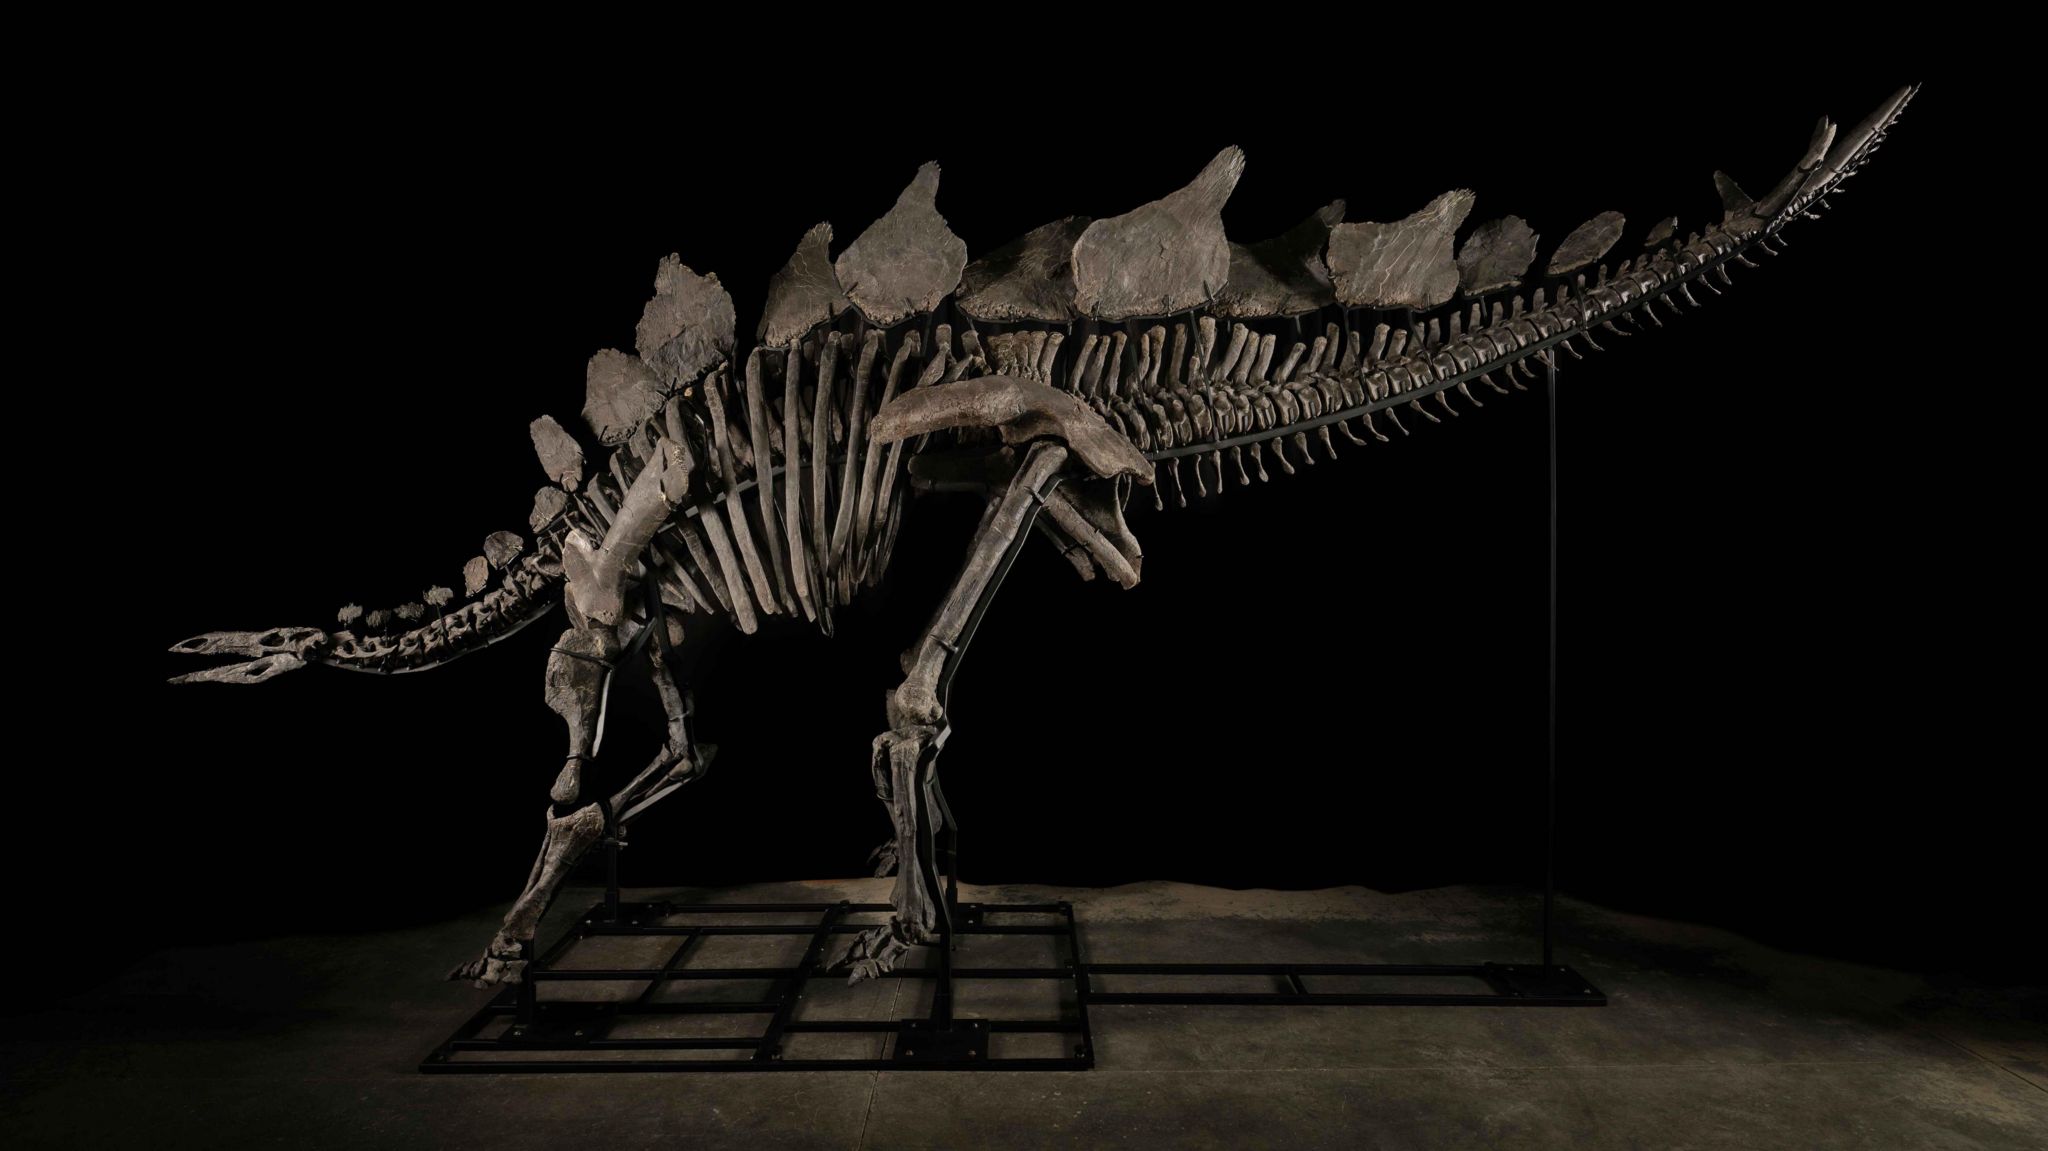 stegosaurus fossil